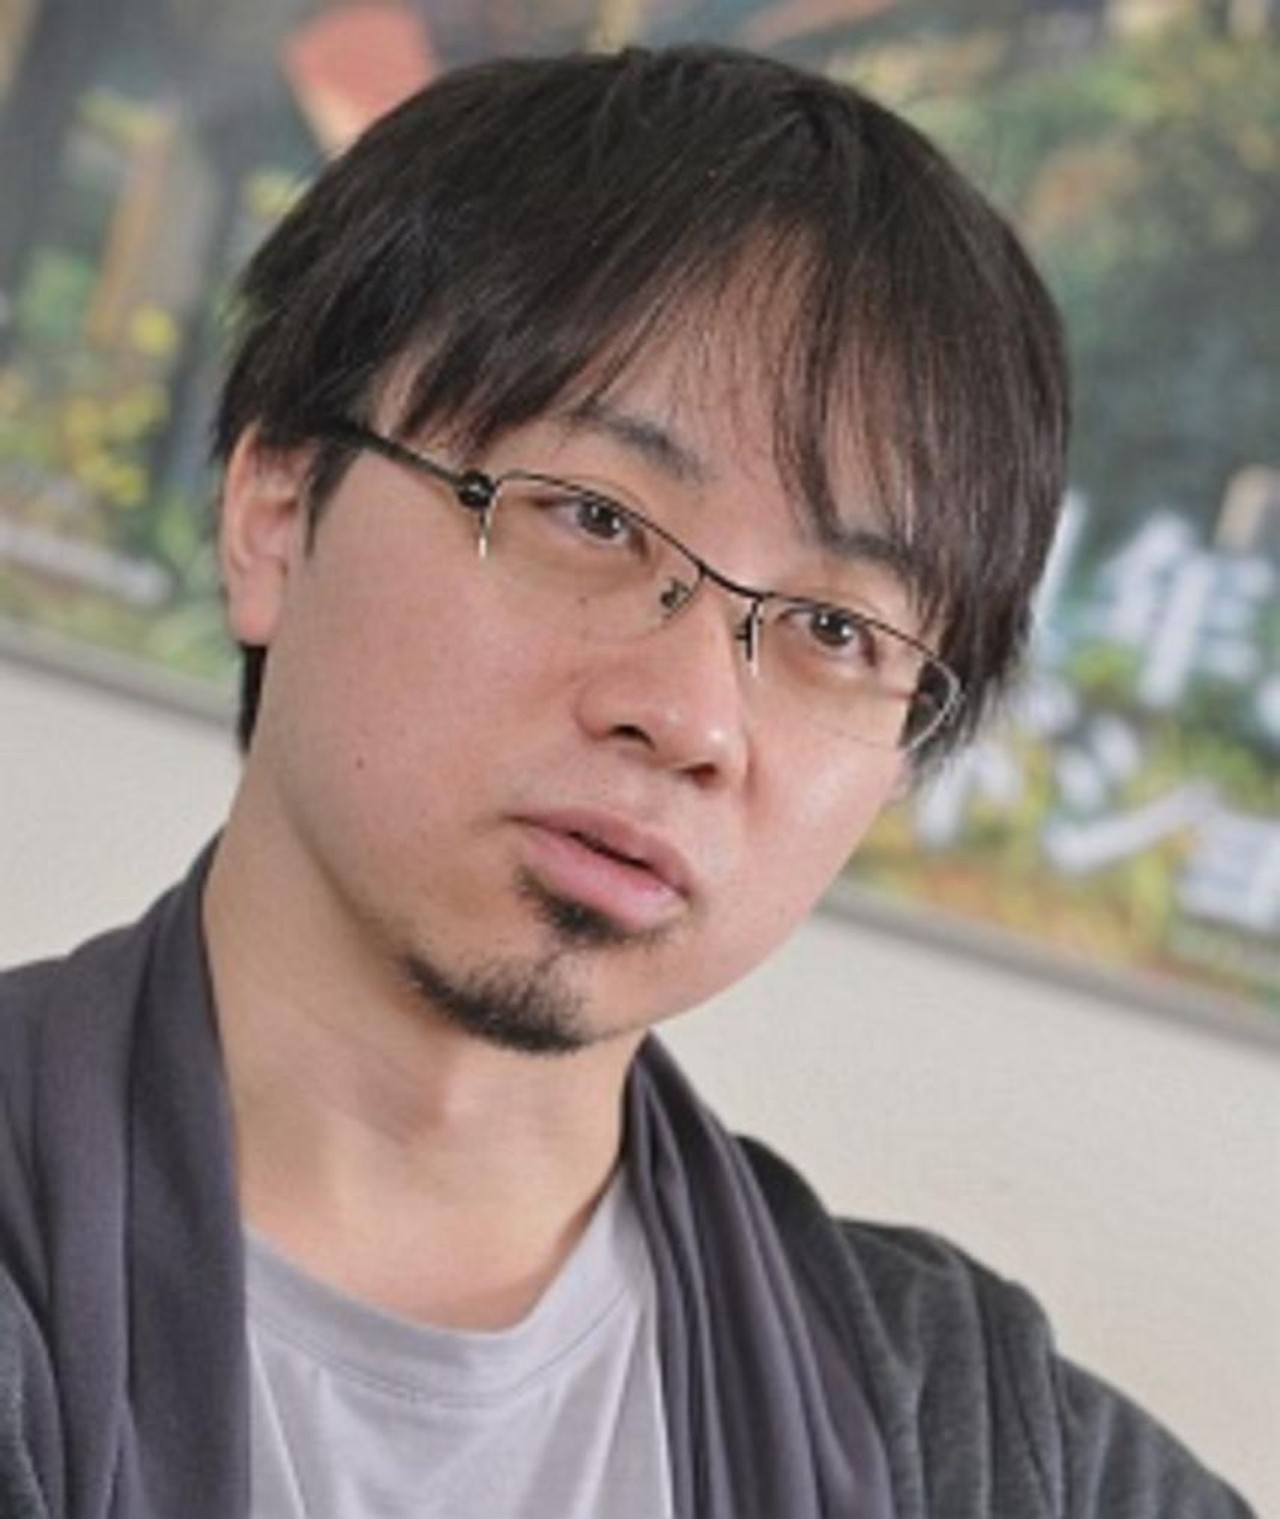 Makoto Shinkai: onde assistir aos filmes do cineasta?